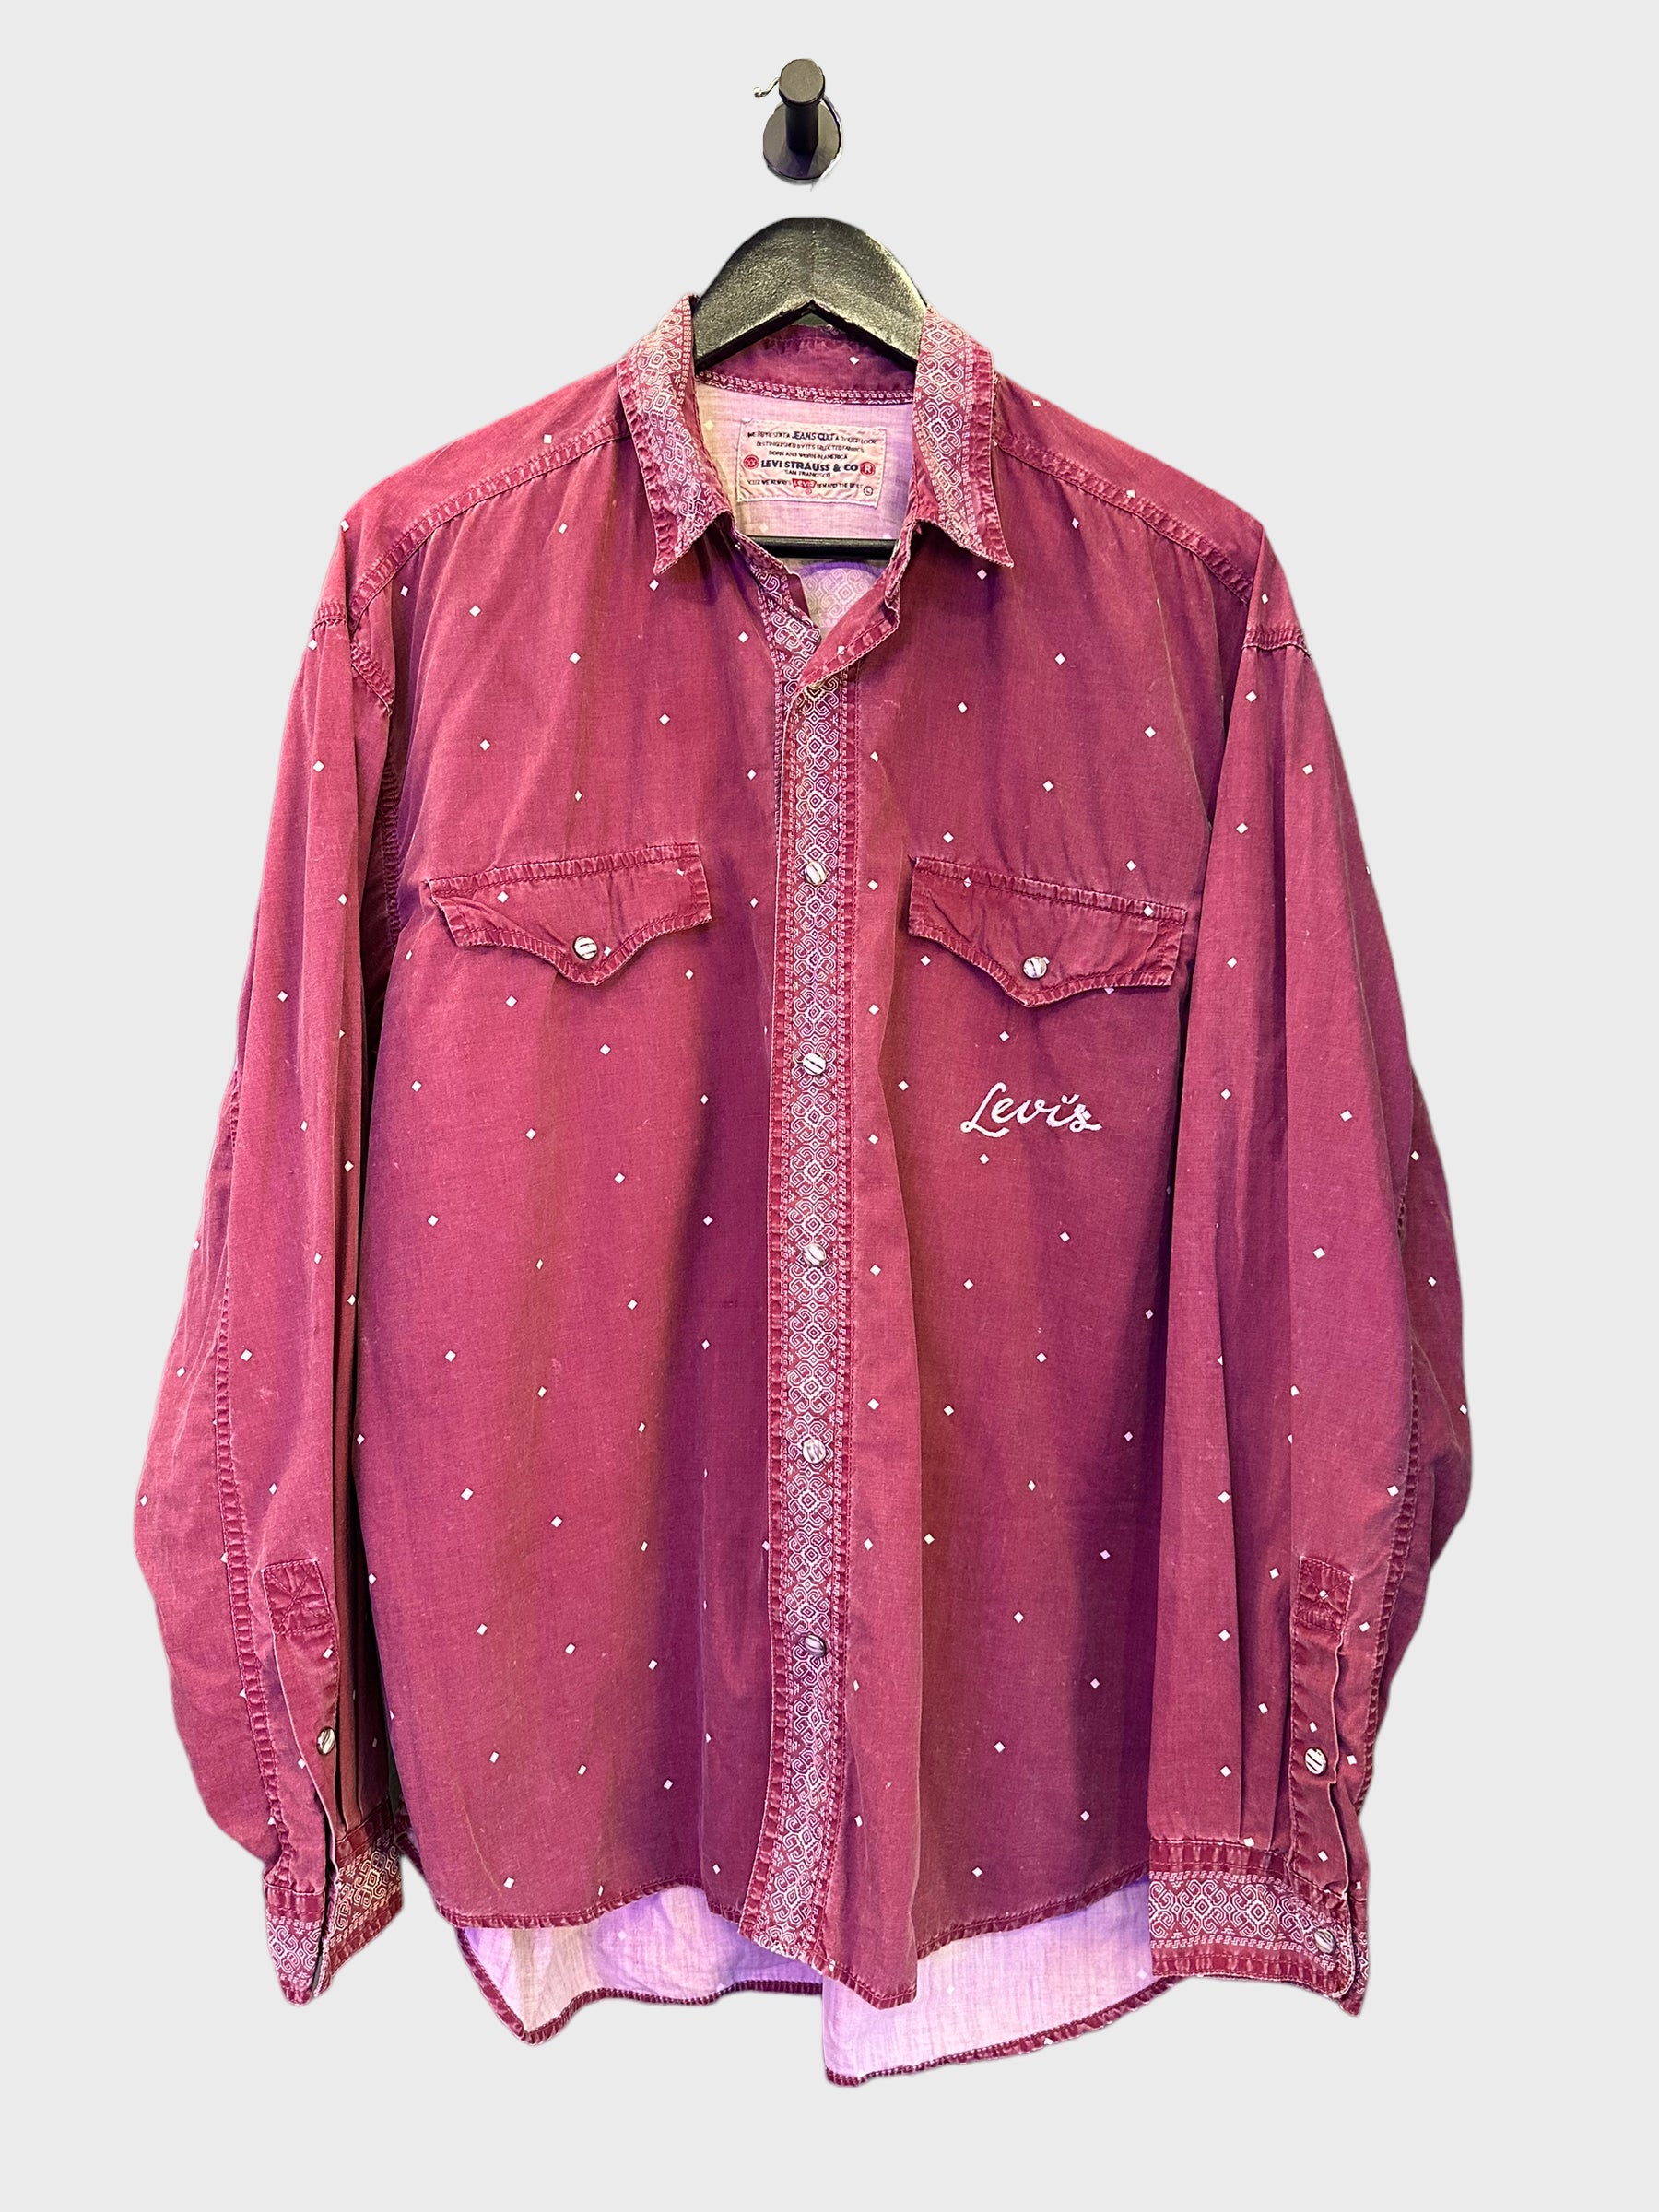 Vintage 80's Levi's shirt